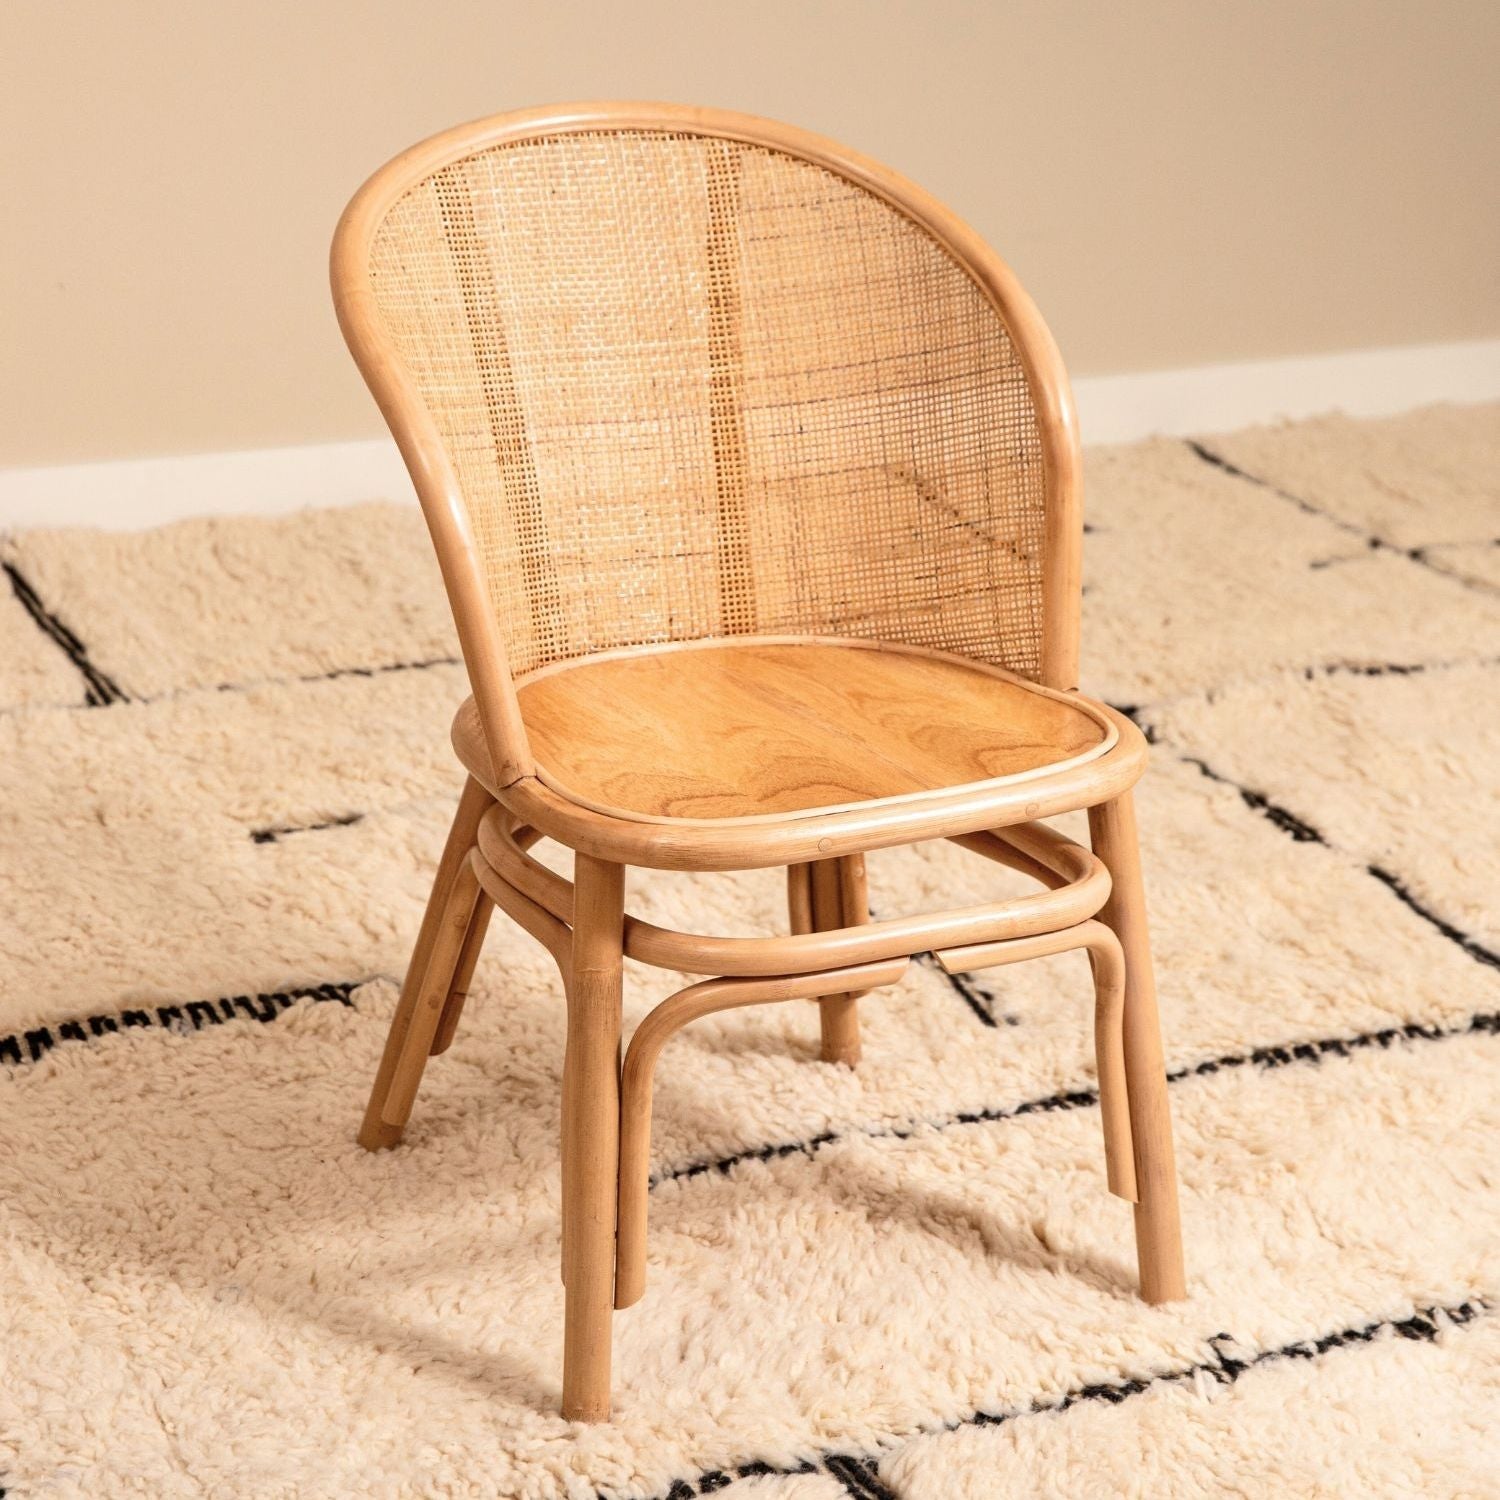 PALM - Junior cane chair